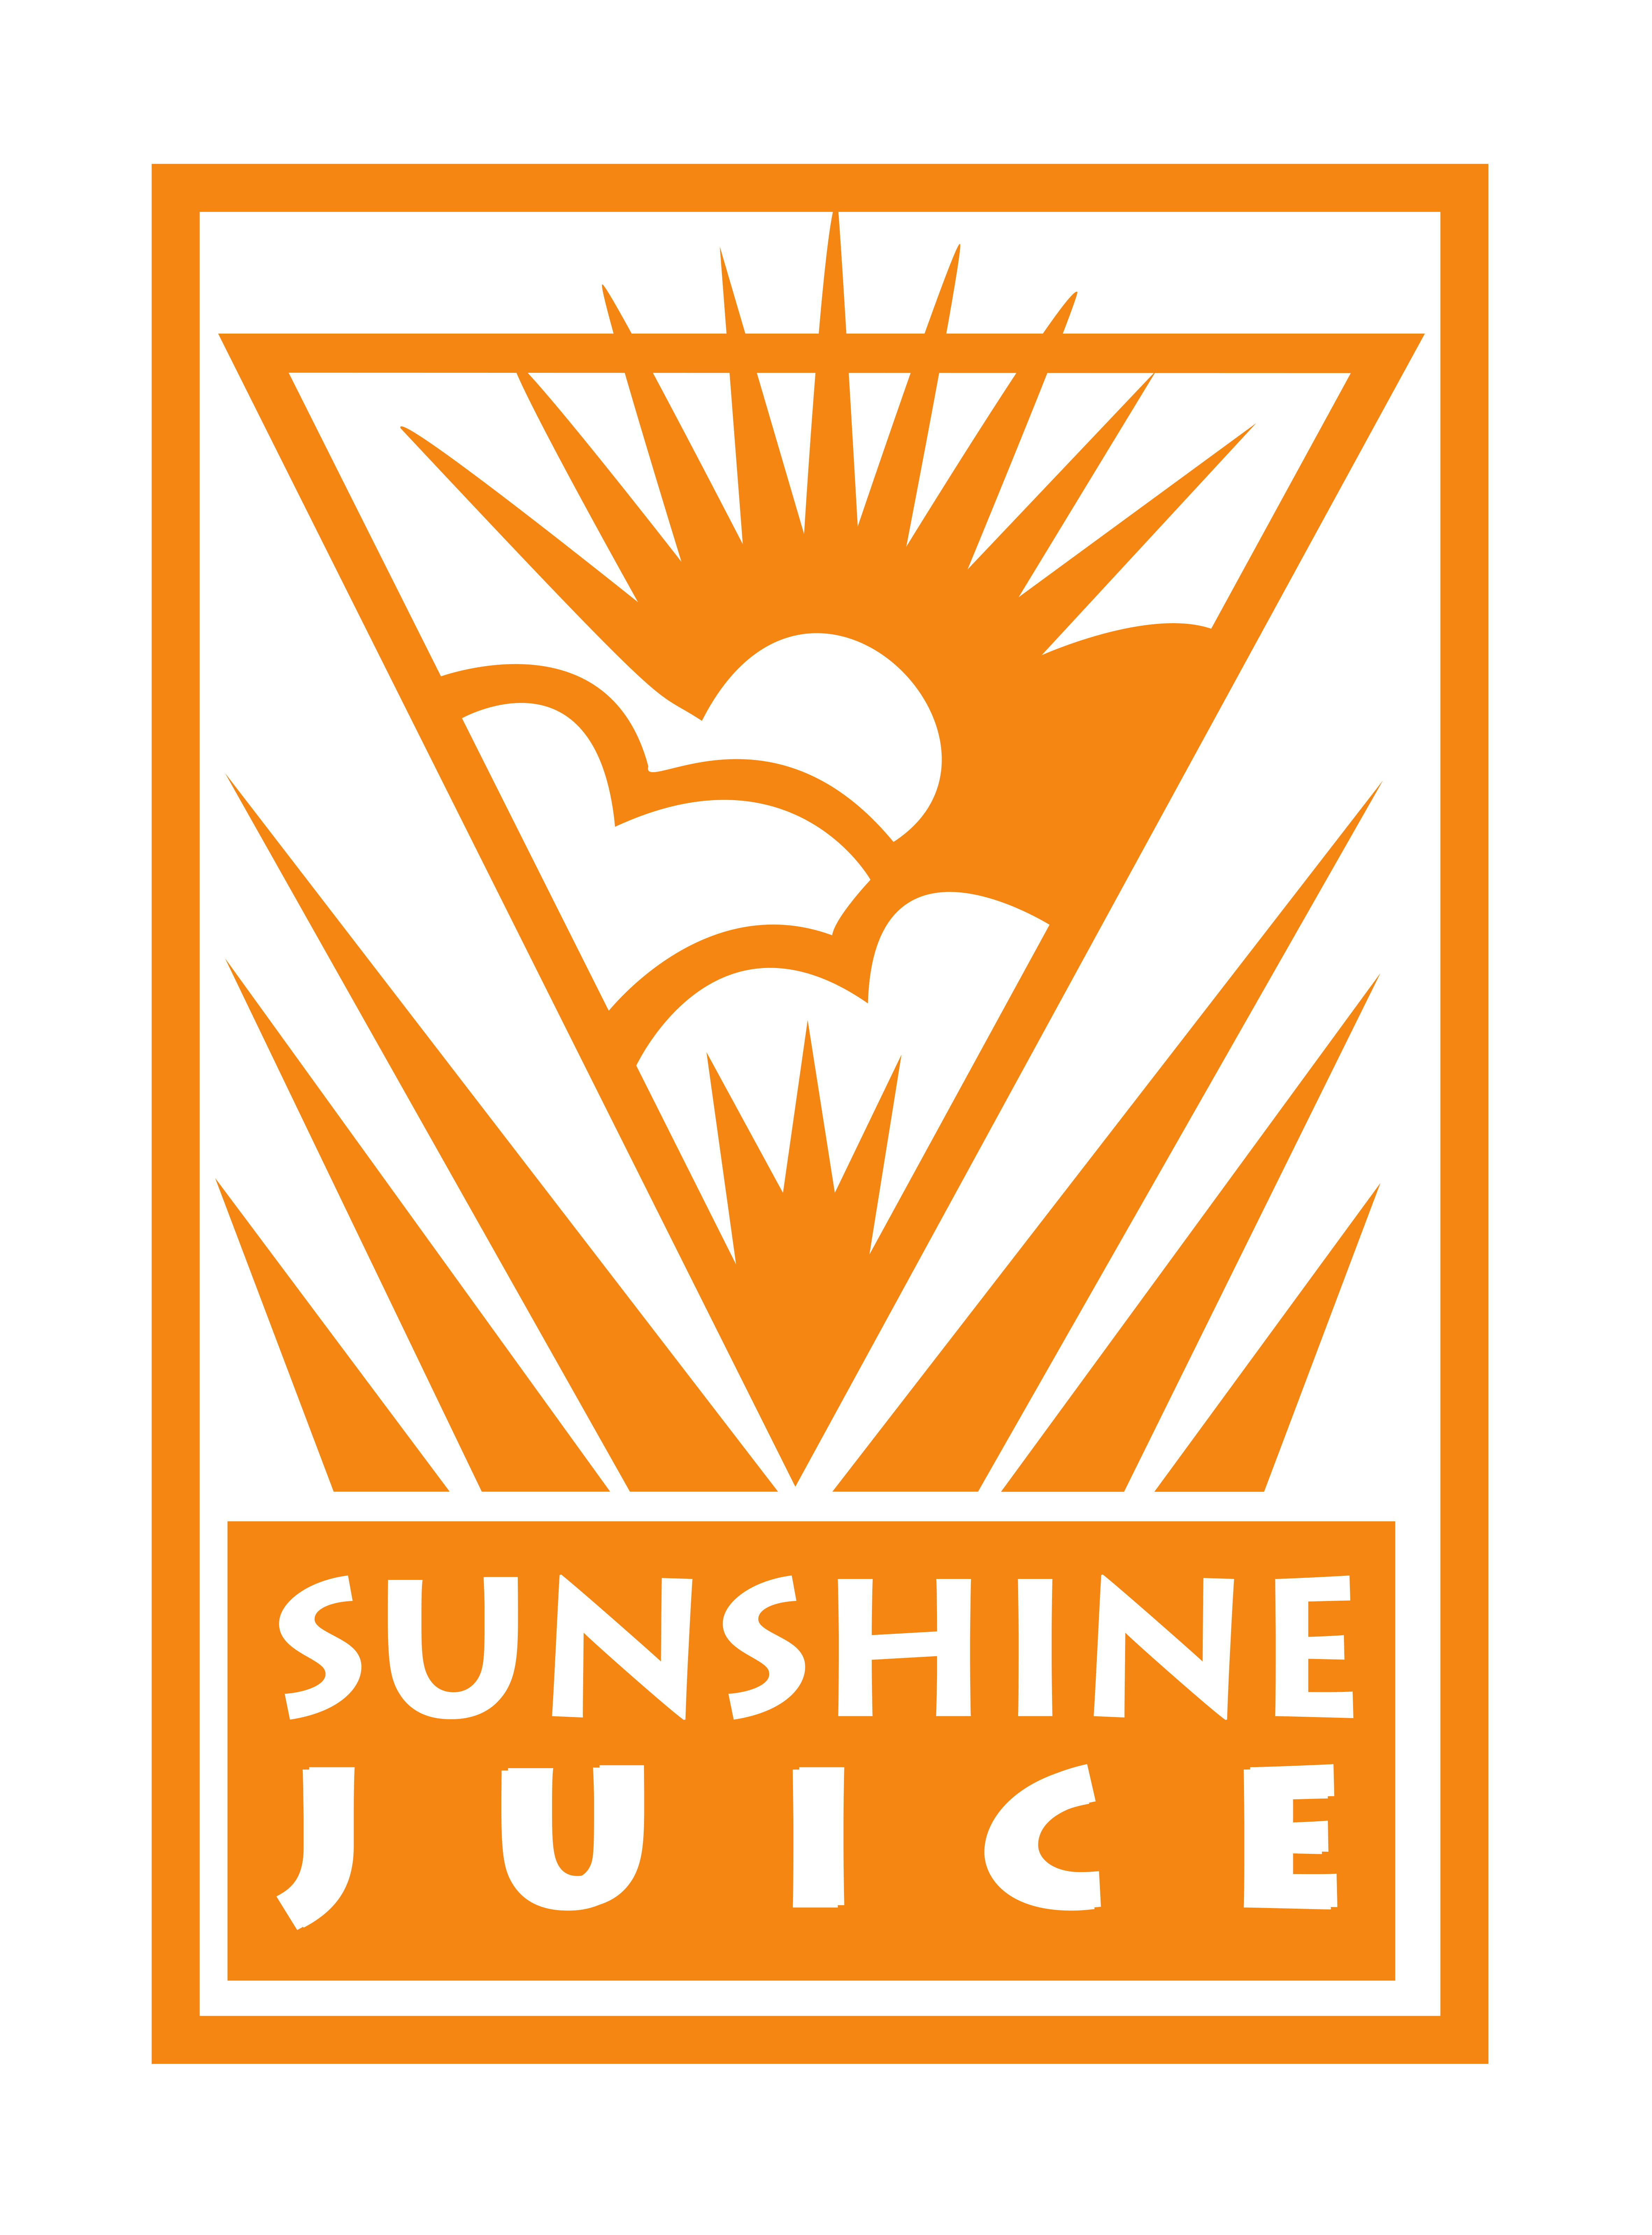 Image of Sunshine Juice Ltd logotype